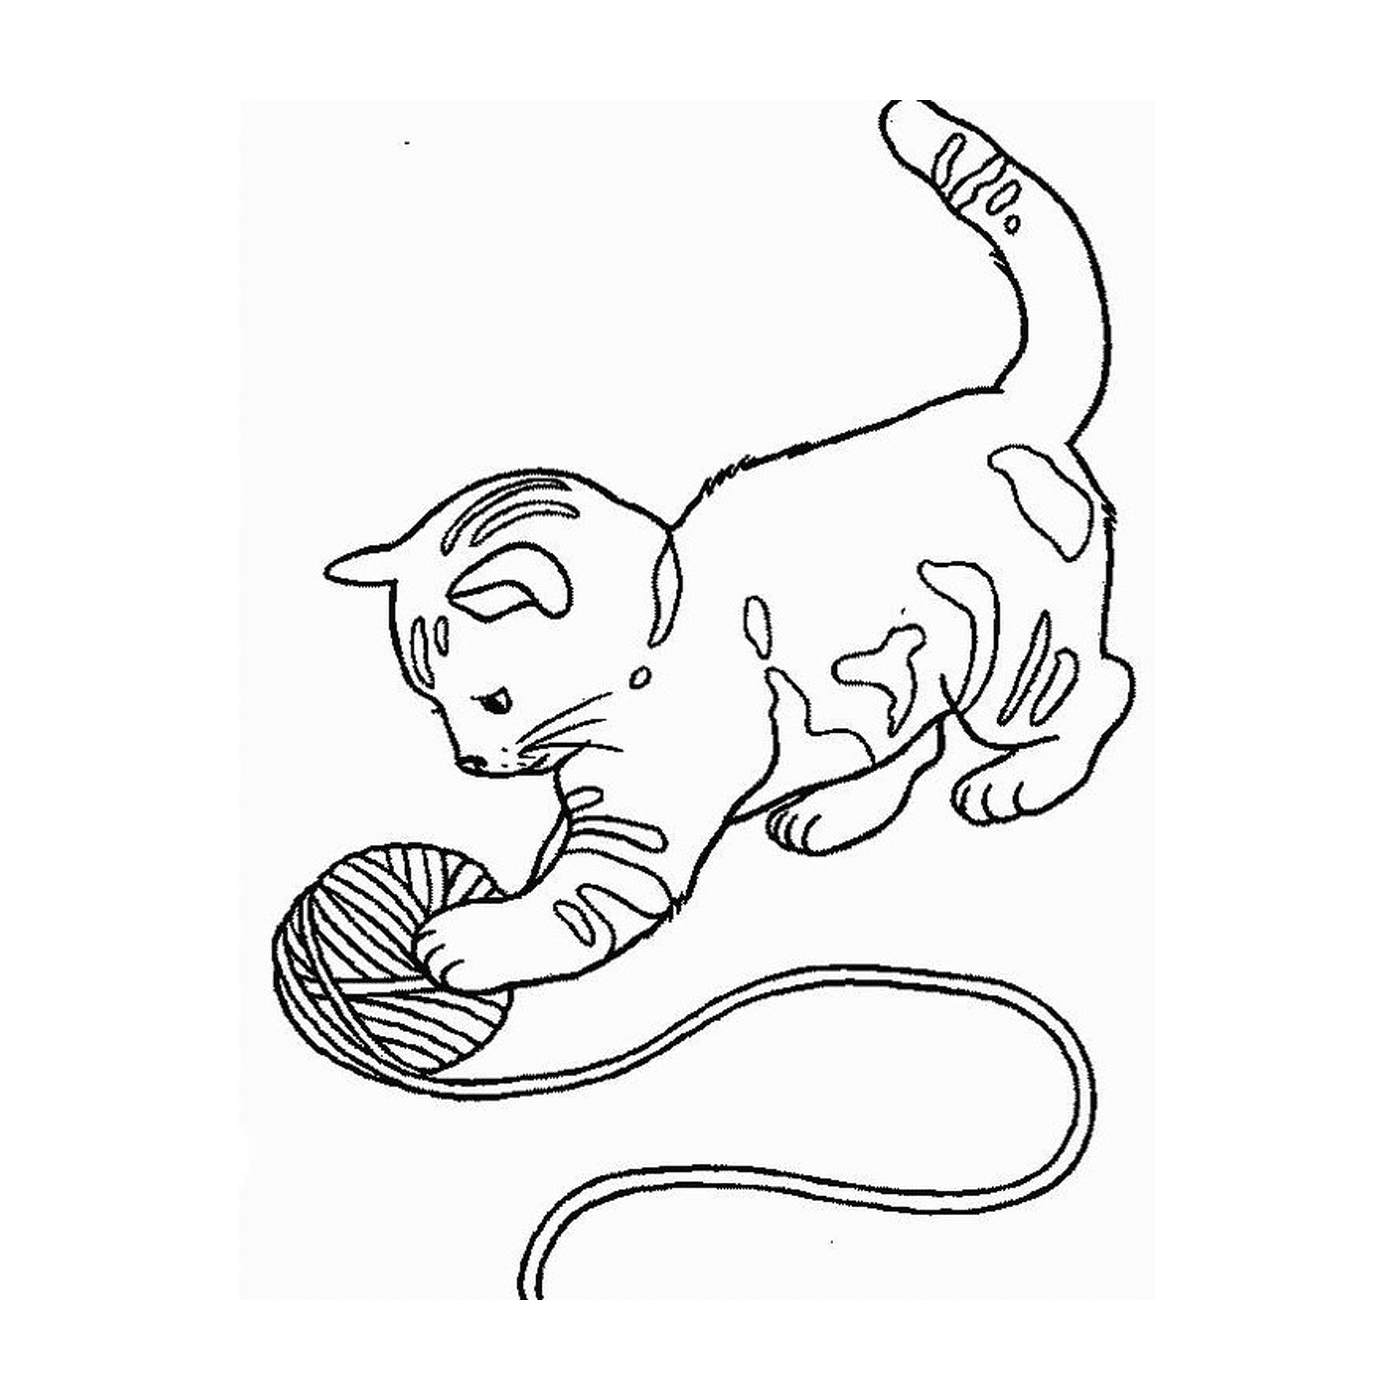   Un chaton jouant avec une balle 